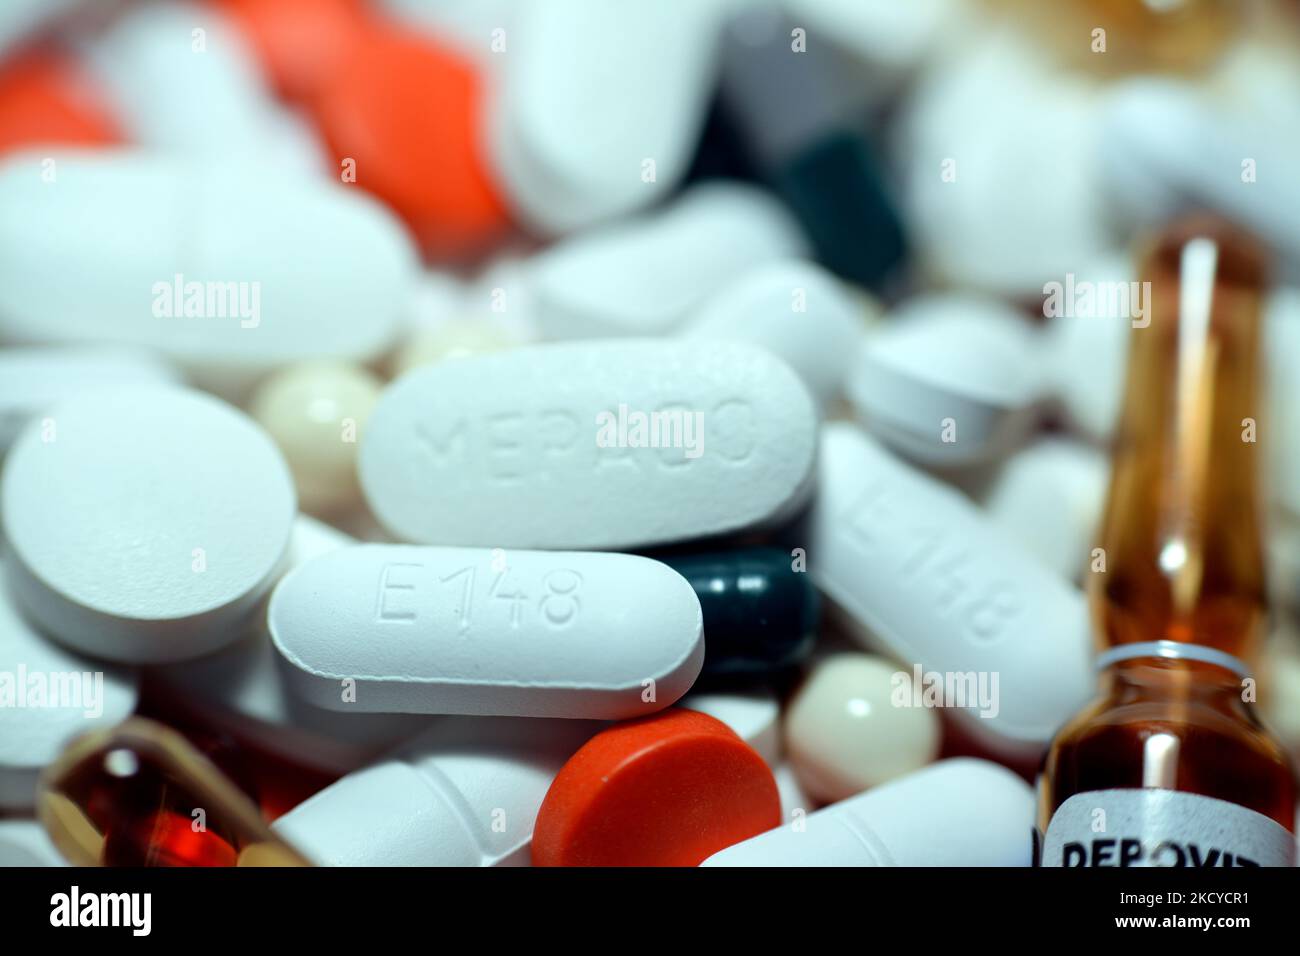 Le Caire, Egypte, 29 octobre 2022: Pile de différents comprimés médicaux, pilules, capsules et ampoules qui ont utilisé pour traiter diverses maladies et conditions, stac Banque D'Images